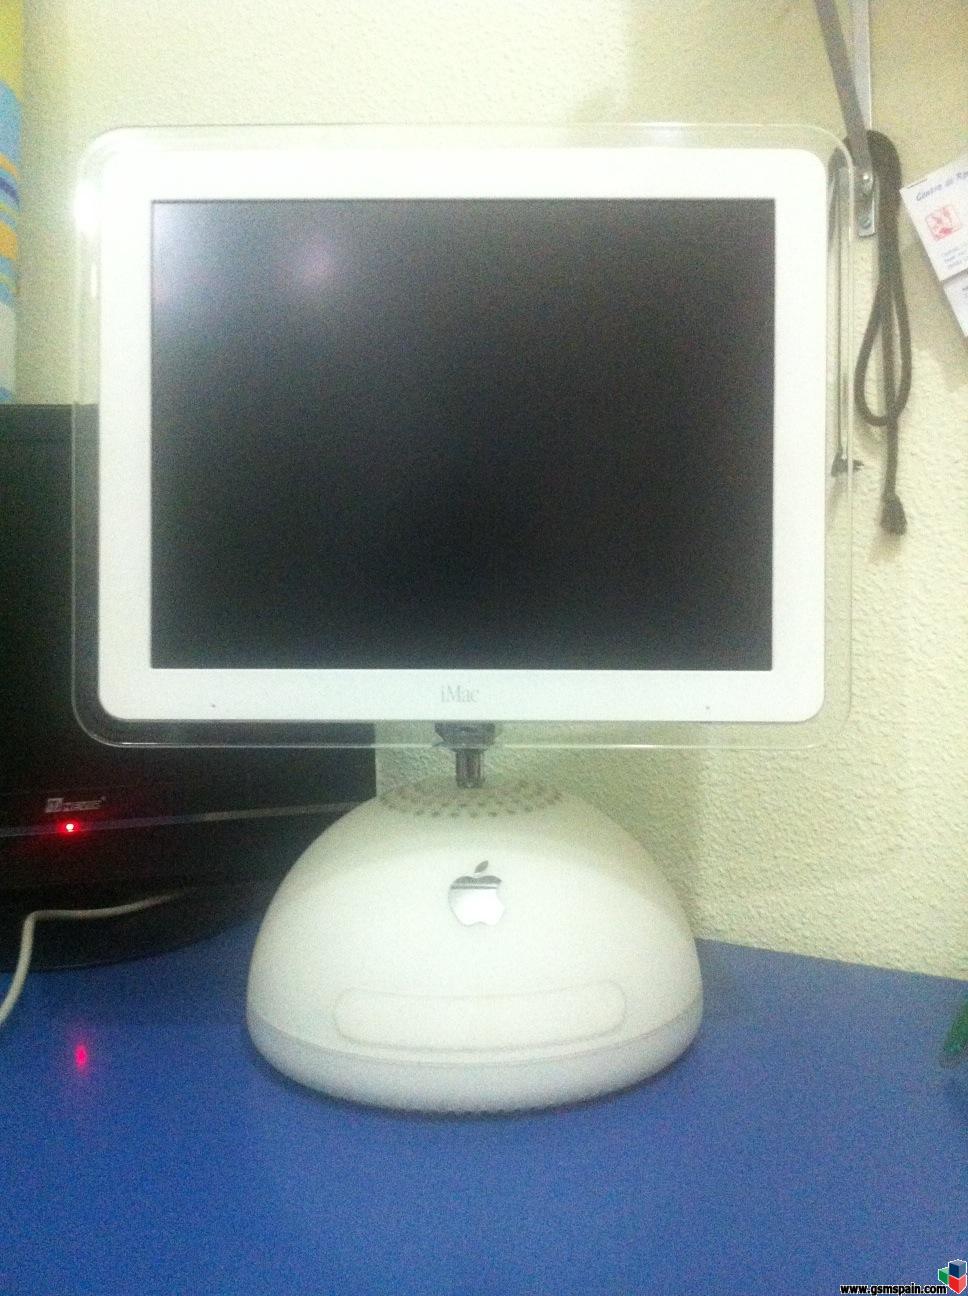 [VENDO] iMac G4. iMac Lamparita. Para amantes de Apple y coleccionistas ;)